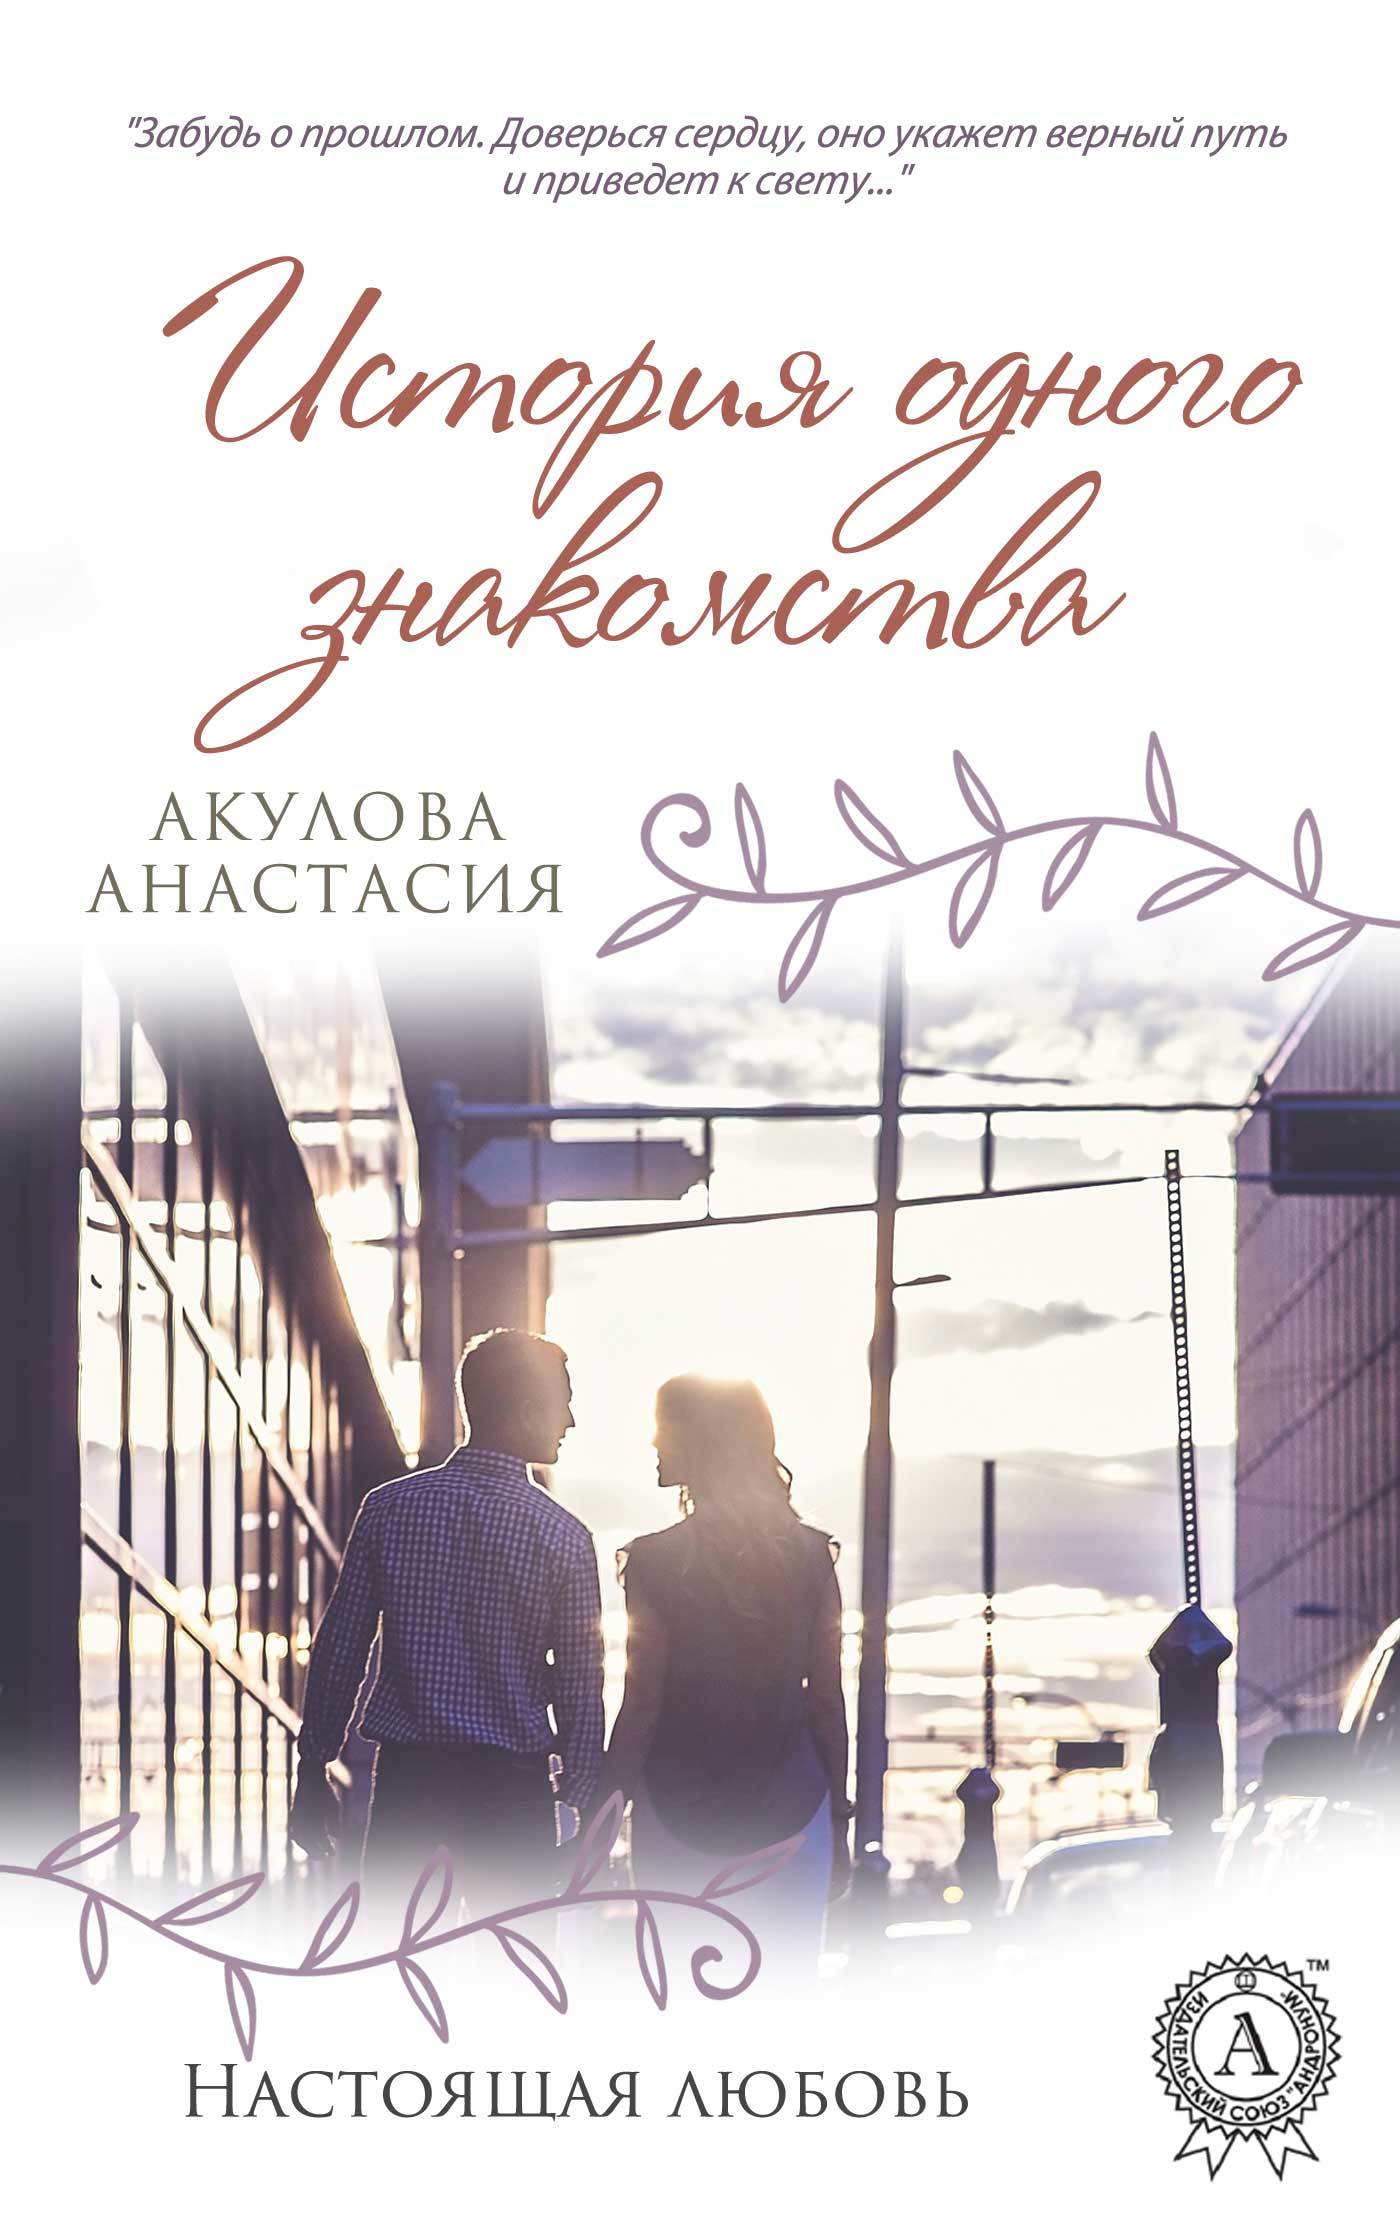 Скачать История одного знакомства - Анастасия Акулова